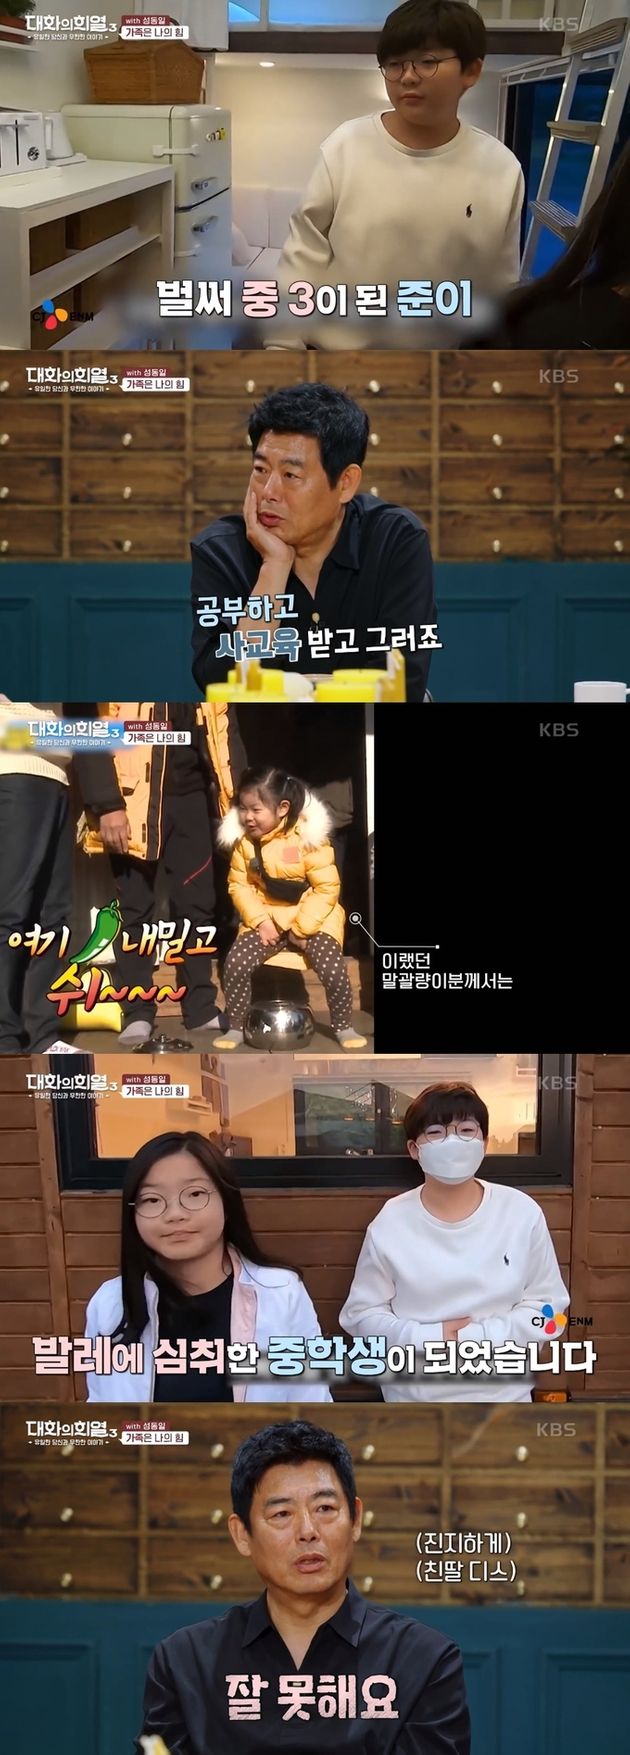 KBS '대화의 희열3'에 출연해 준이와 빈이의 근황을 전했던 성동일 